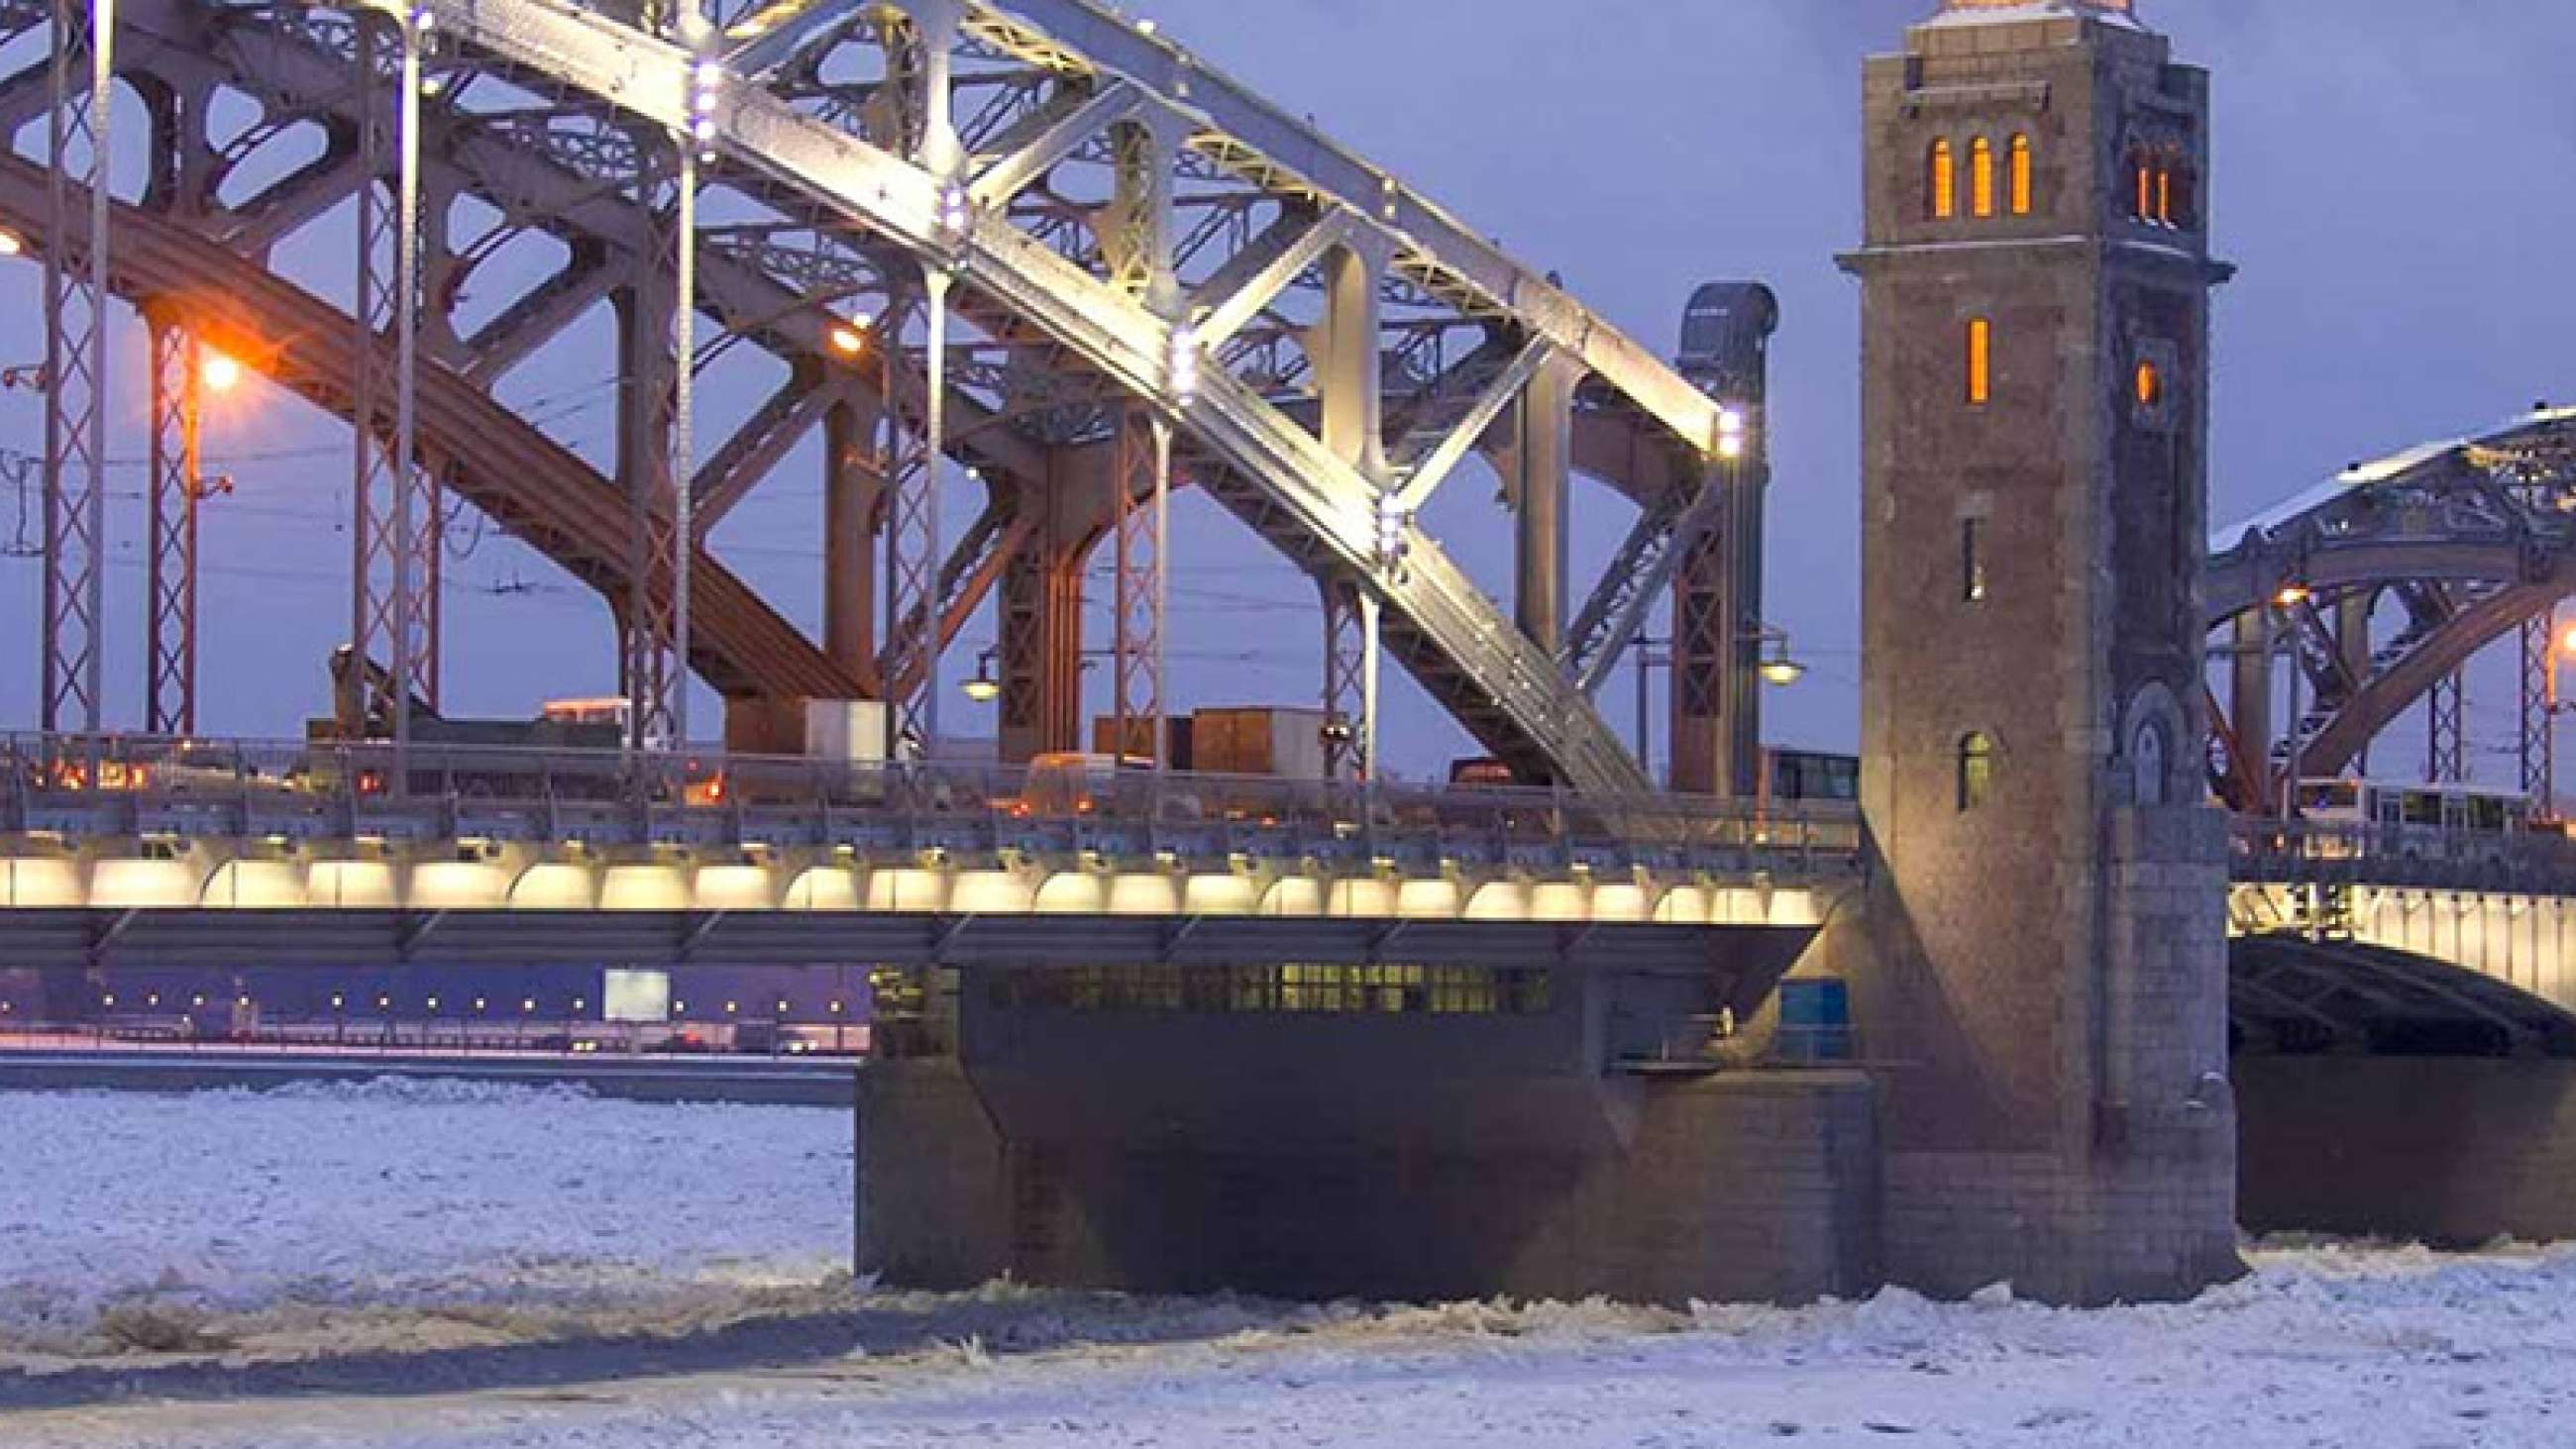 Bolsheokhtinsky Bridge in Saint Petersburg